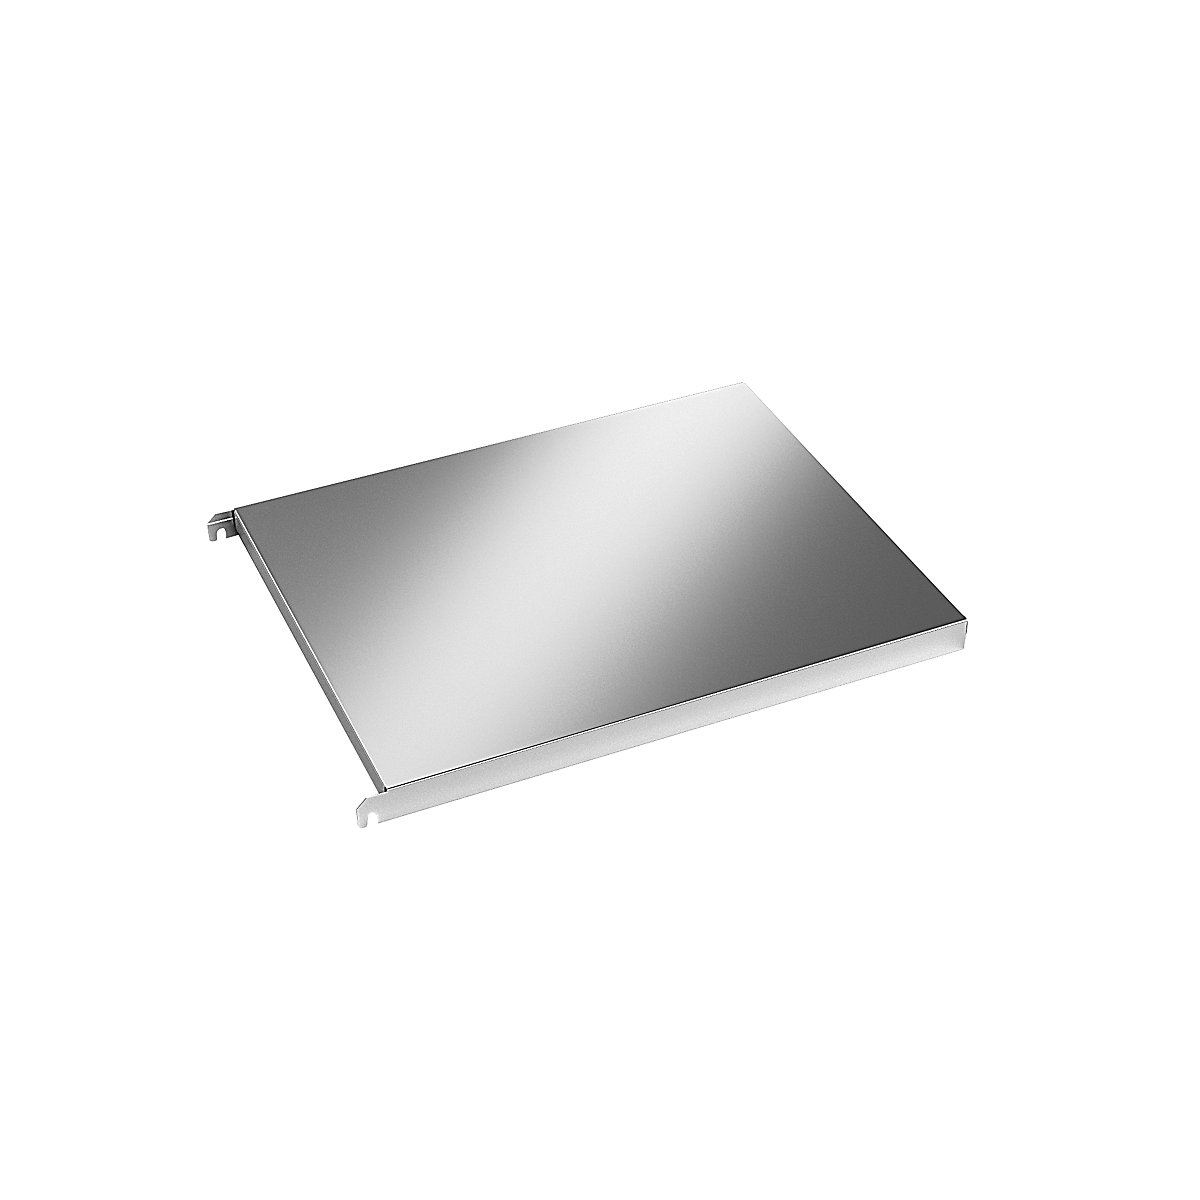 Stainless steel shelf, smooth corner shelf, WxD 640 x 540 mm